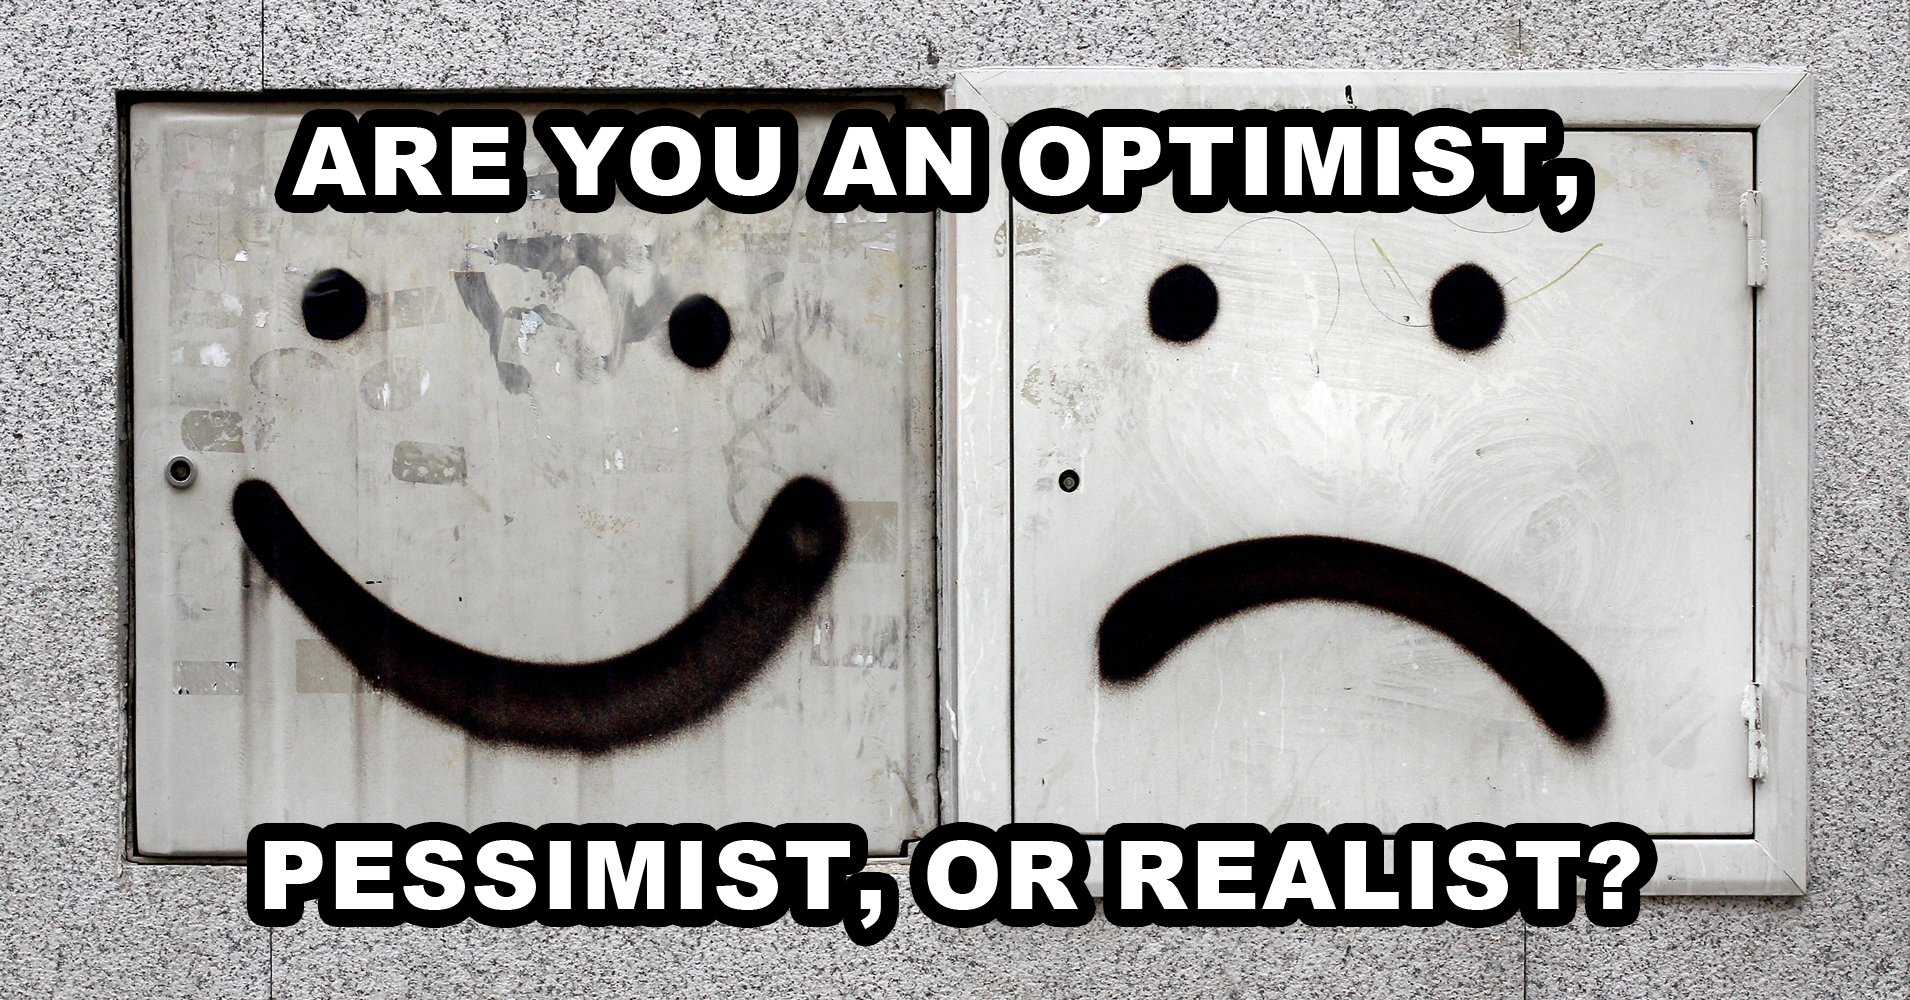 Realist vs optimist vs pessimist